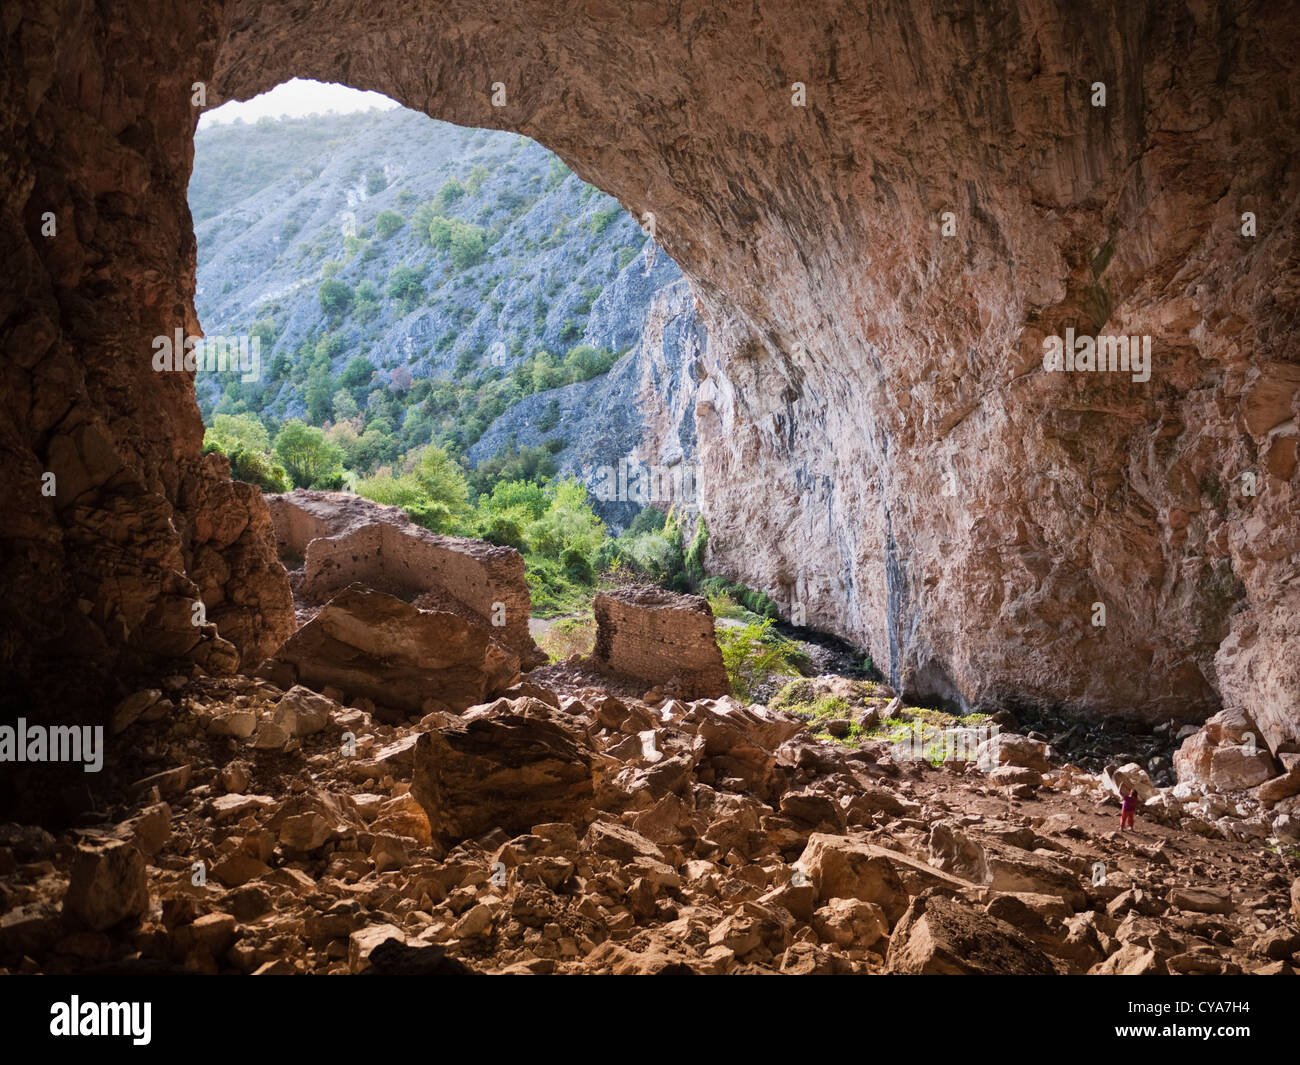 Pesna grotta in Macedonia, completare con rovinato medievale fortezza turca all'interno. Situato tra Kicevo e Makedonski Brod. Foto Stock